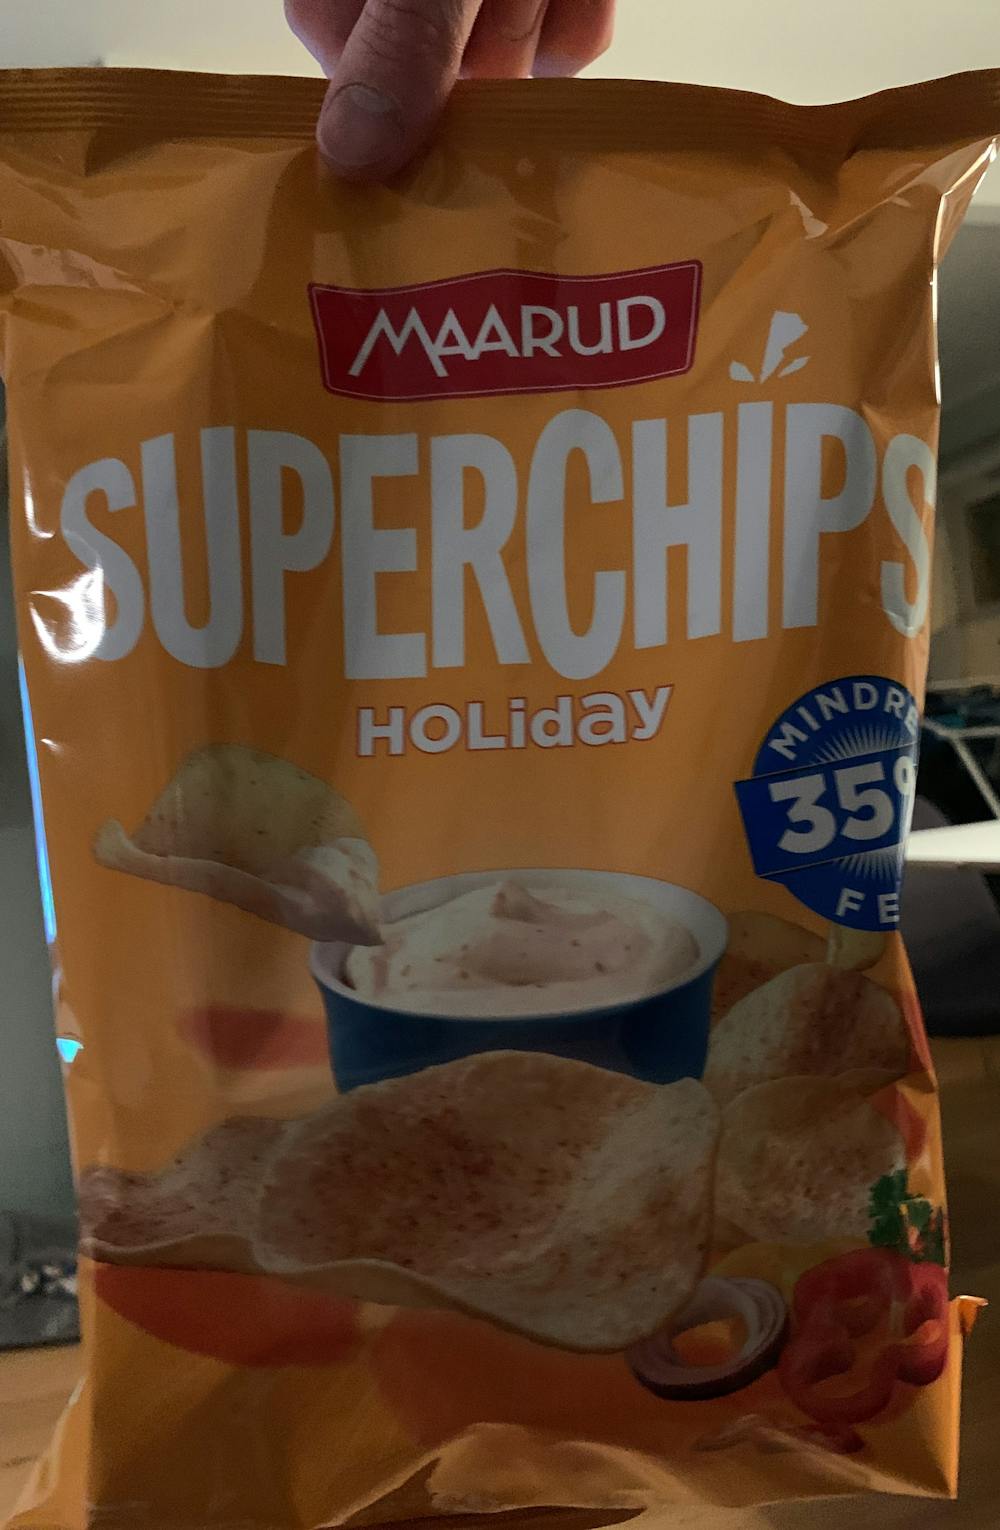 Superchips holiday, Maarud